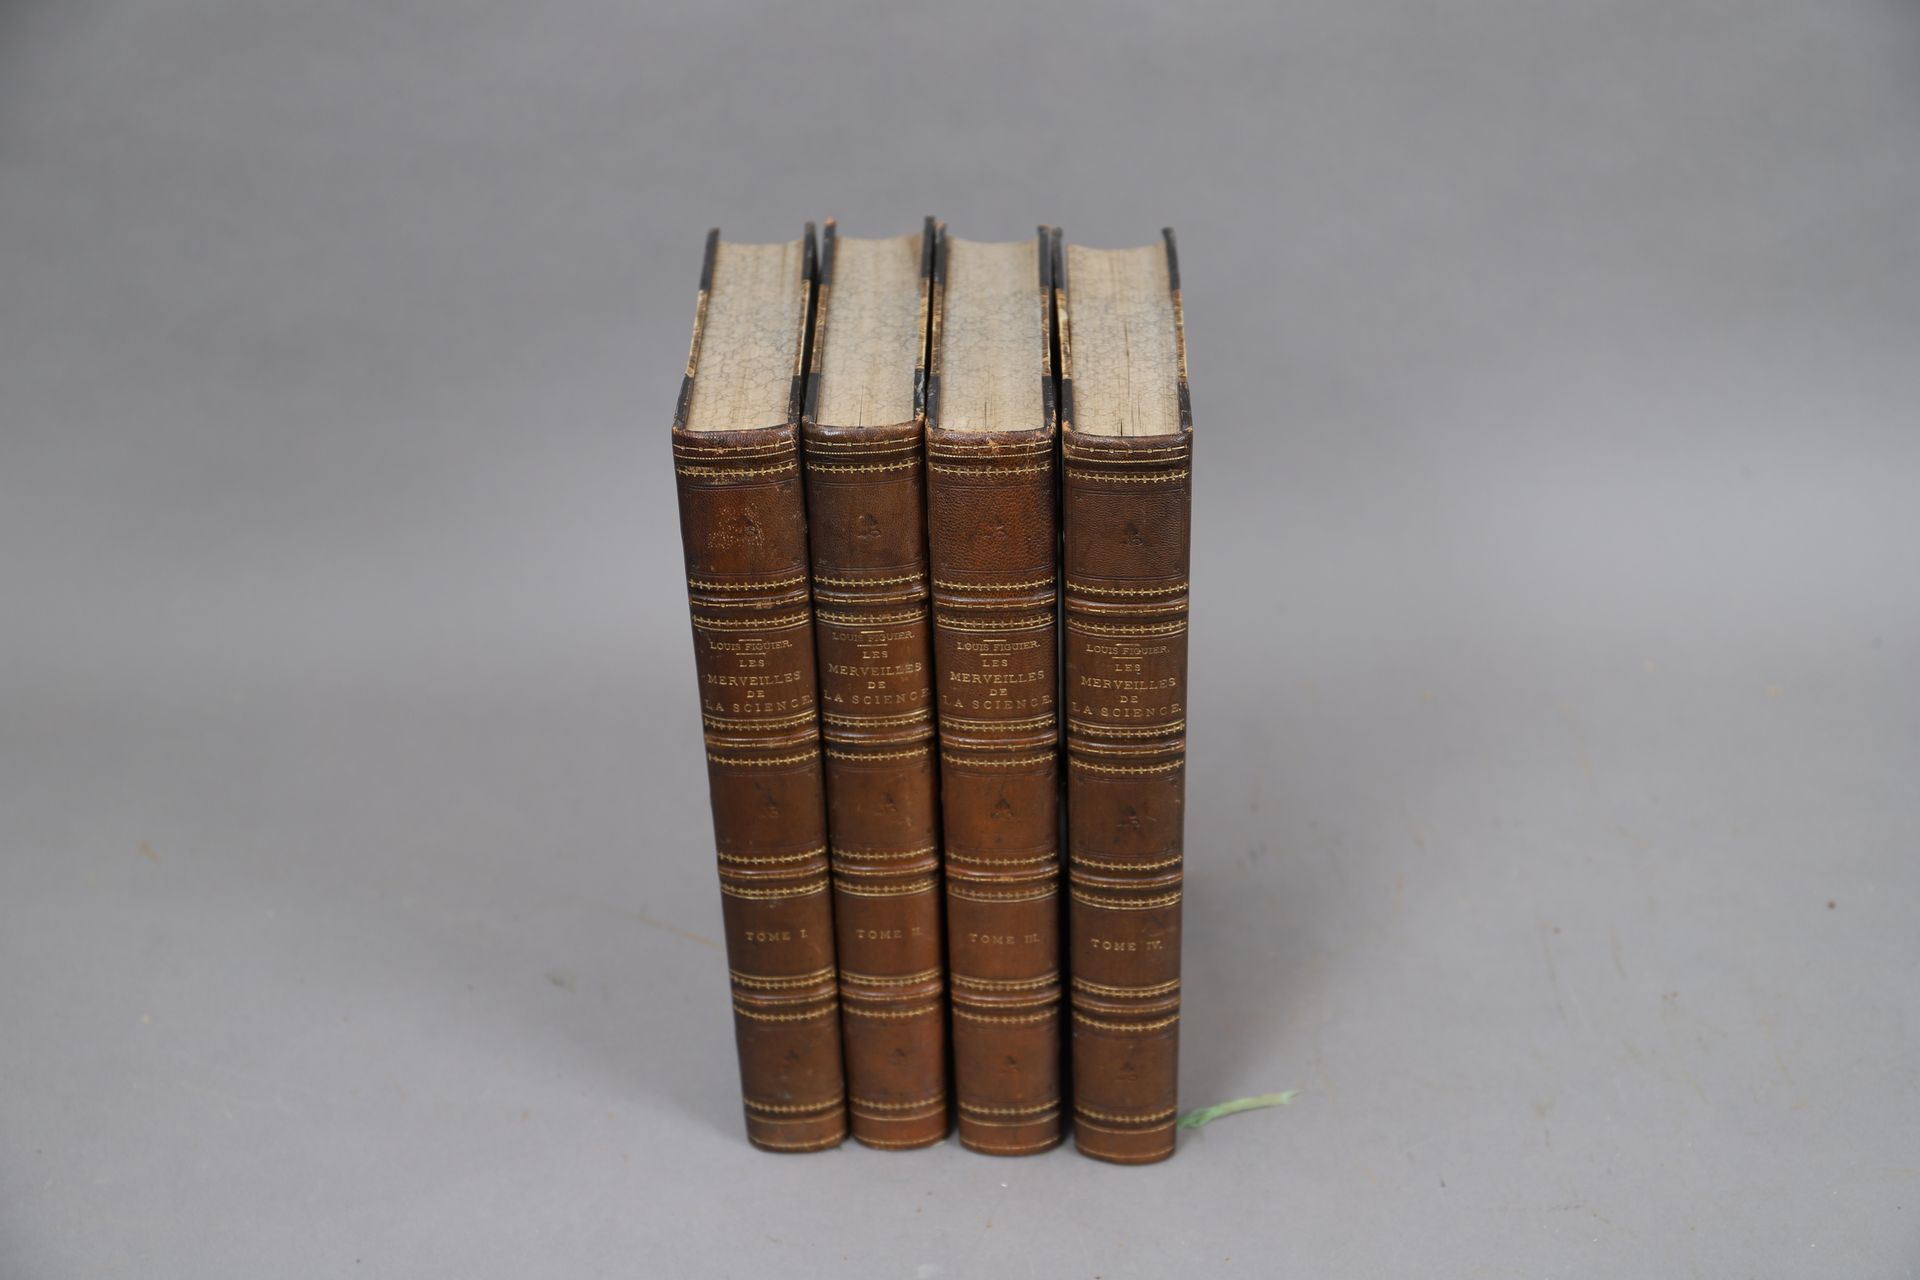 Null figuier--科学的奇迹。

4册合订本。(1870).